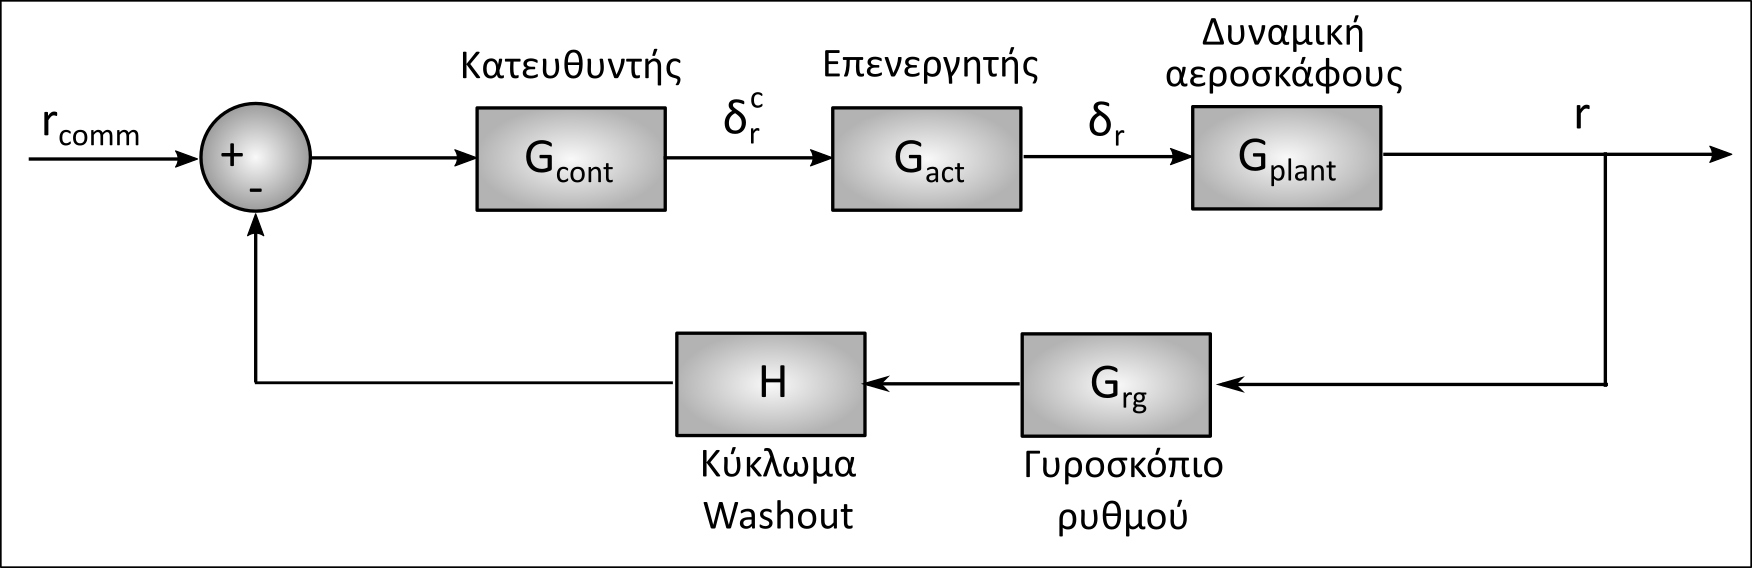 Η εικόνα δεν εμφανίζεται/Image is not displayed - Σύστημα επαύξησης της απόσβεσης της εκτροπής με κύκλωμα Washout στην ανάδραση / yaw damper, washout circuit, diagramm